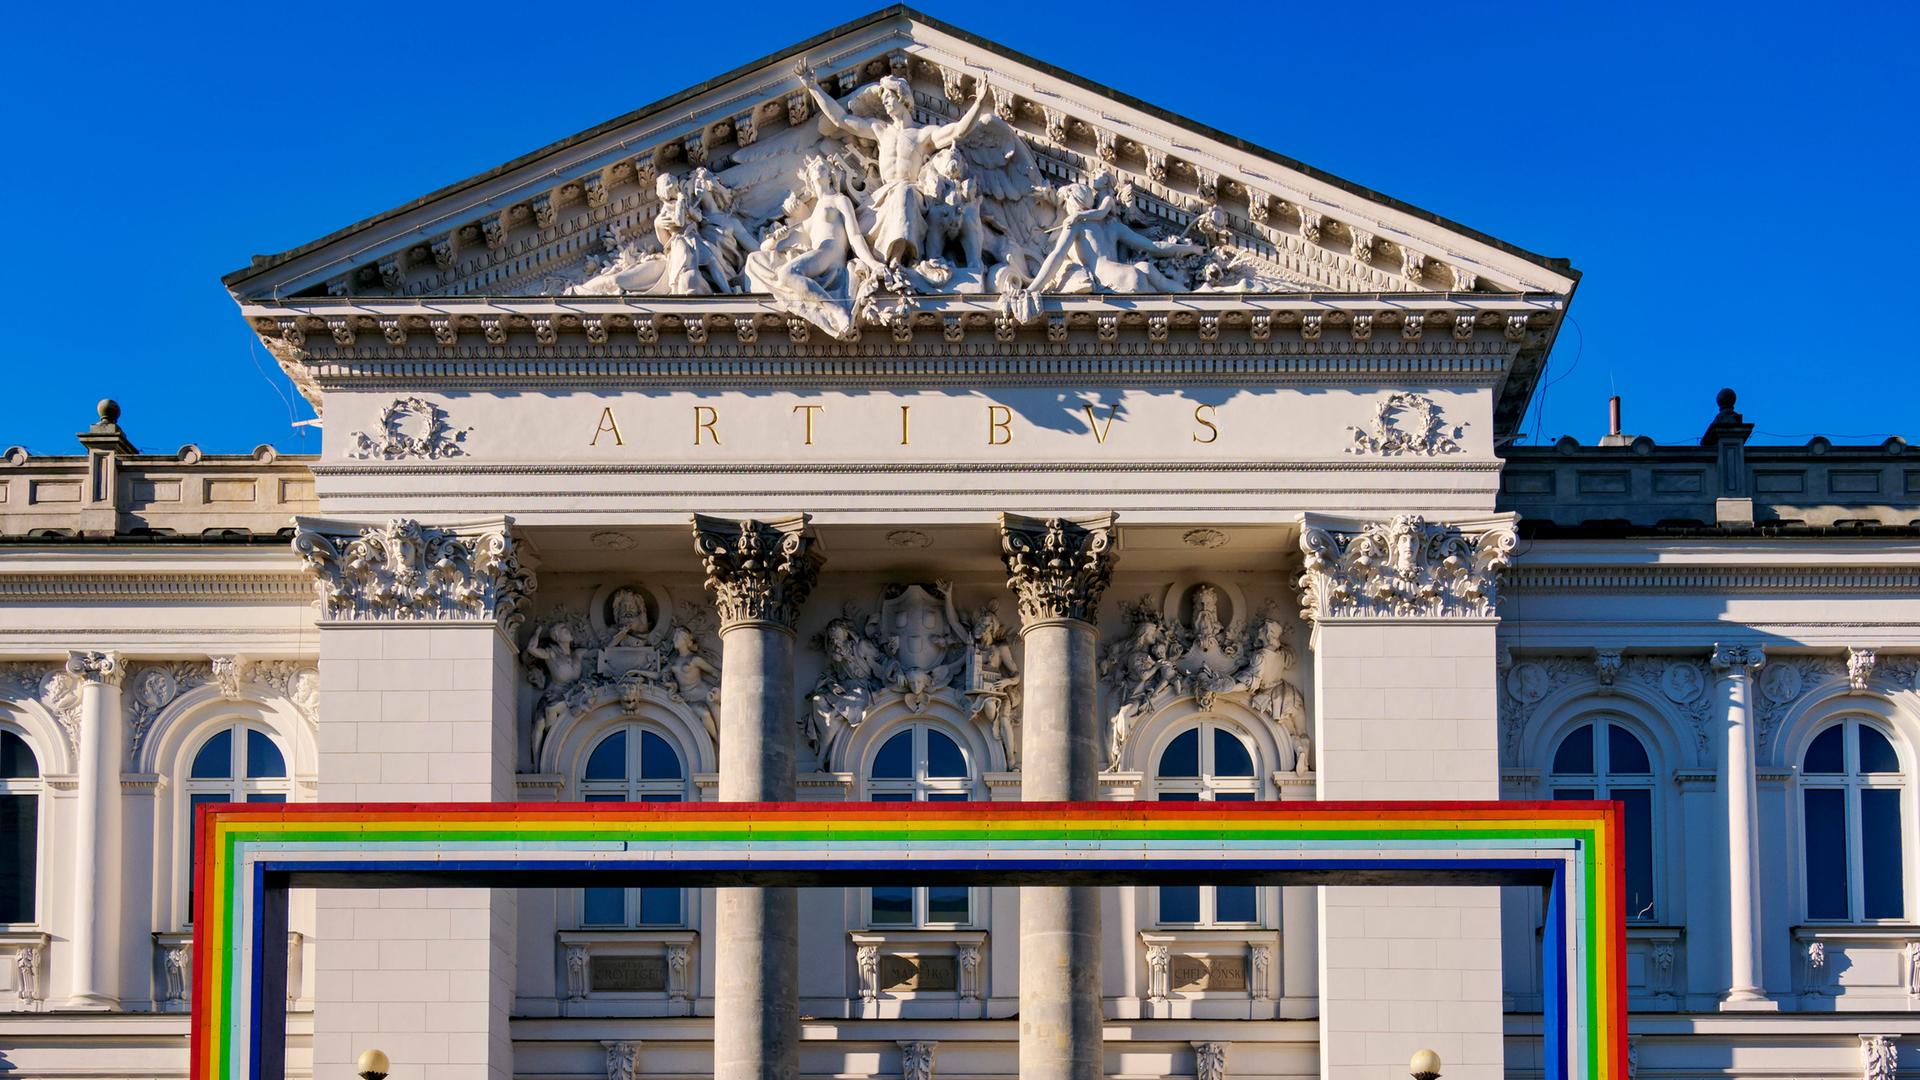 Symbolträchtiges Gebäude: Die Zachęta-Galerie in Warschau. Im Vordergrund ist ein Bogen aus den Farben des Regenbogens zu sehen, der für die LGBTQ-Community, also unter anderem Lesben und Schwule, steht.